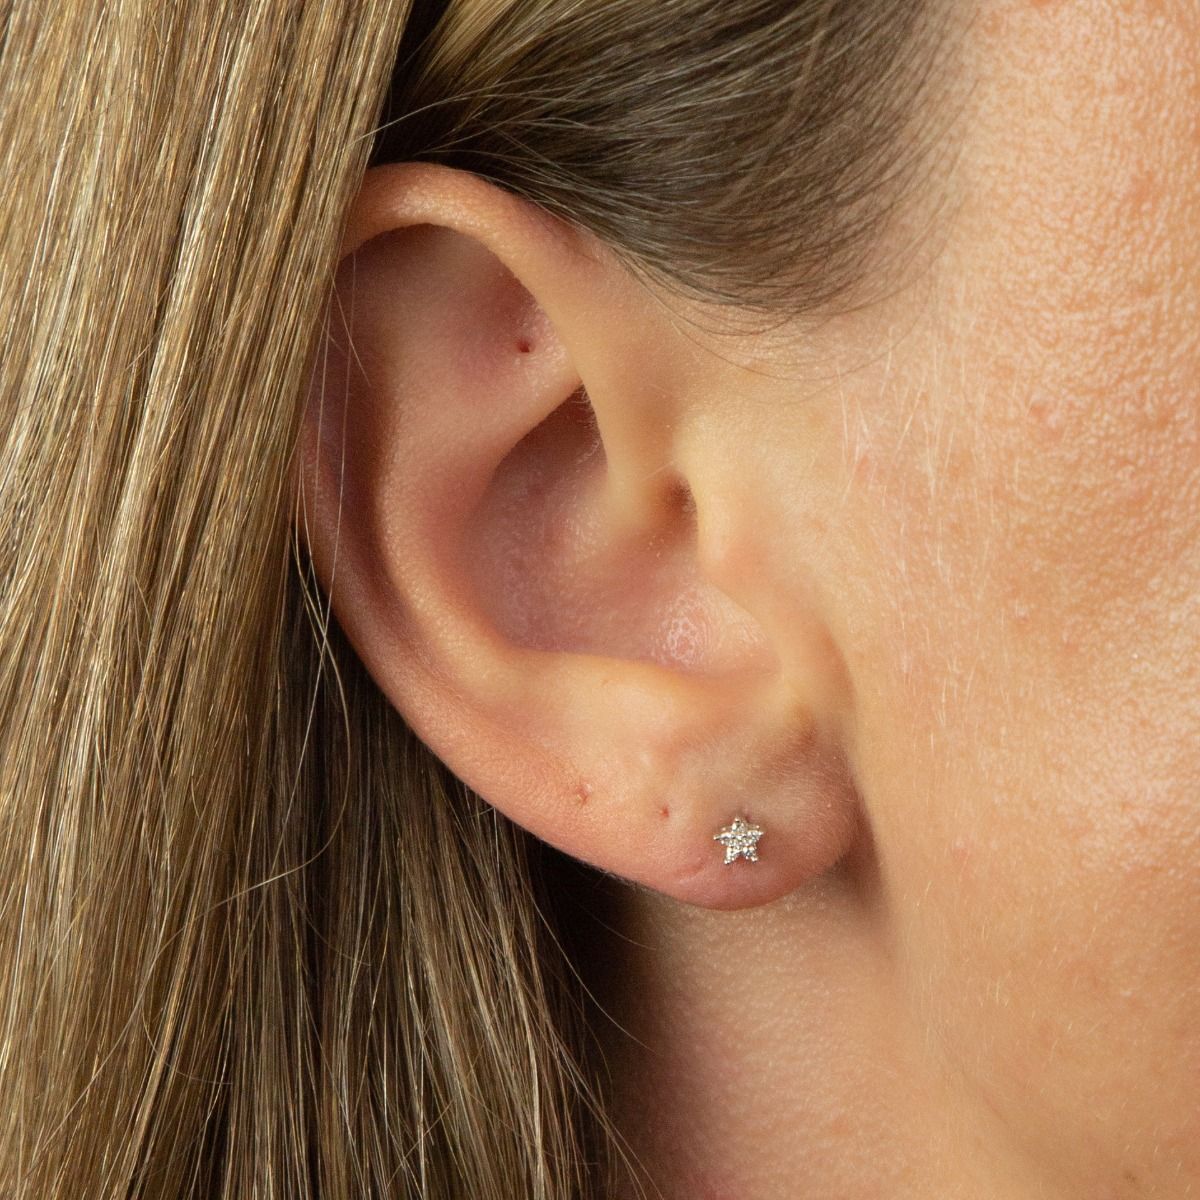 9ct White Gold Diamond Set Star Stud Earrings